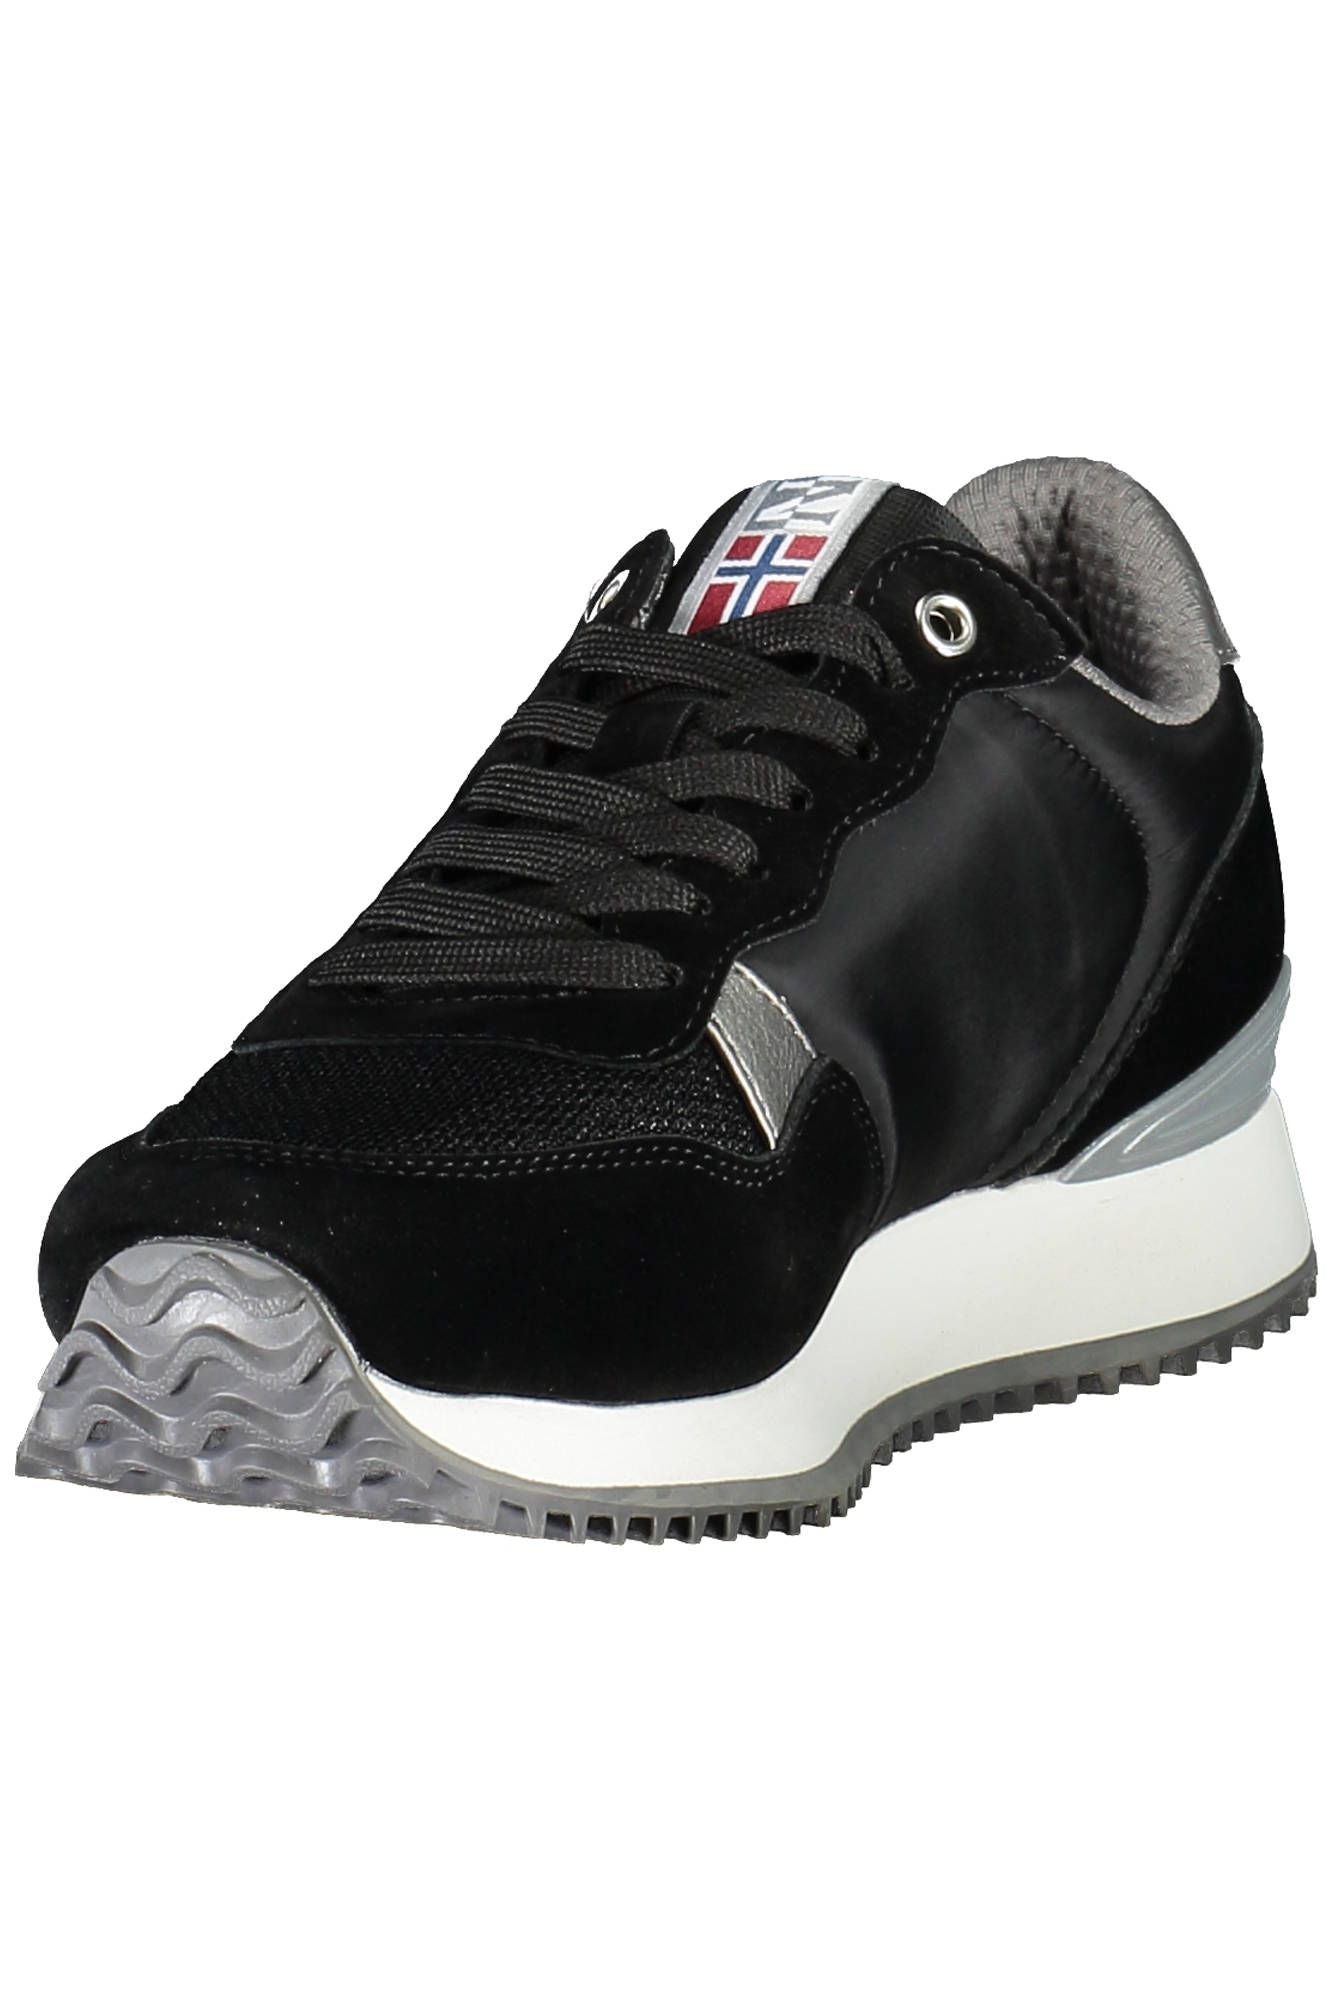 Napapijri Black Polyester Sneaker